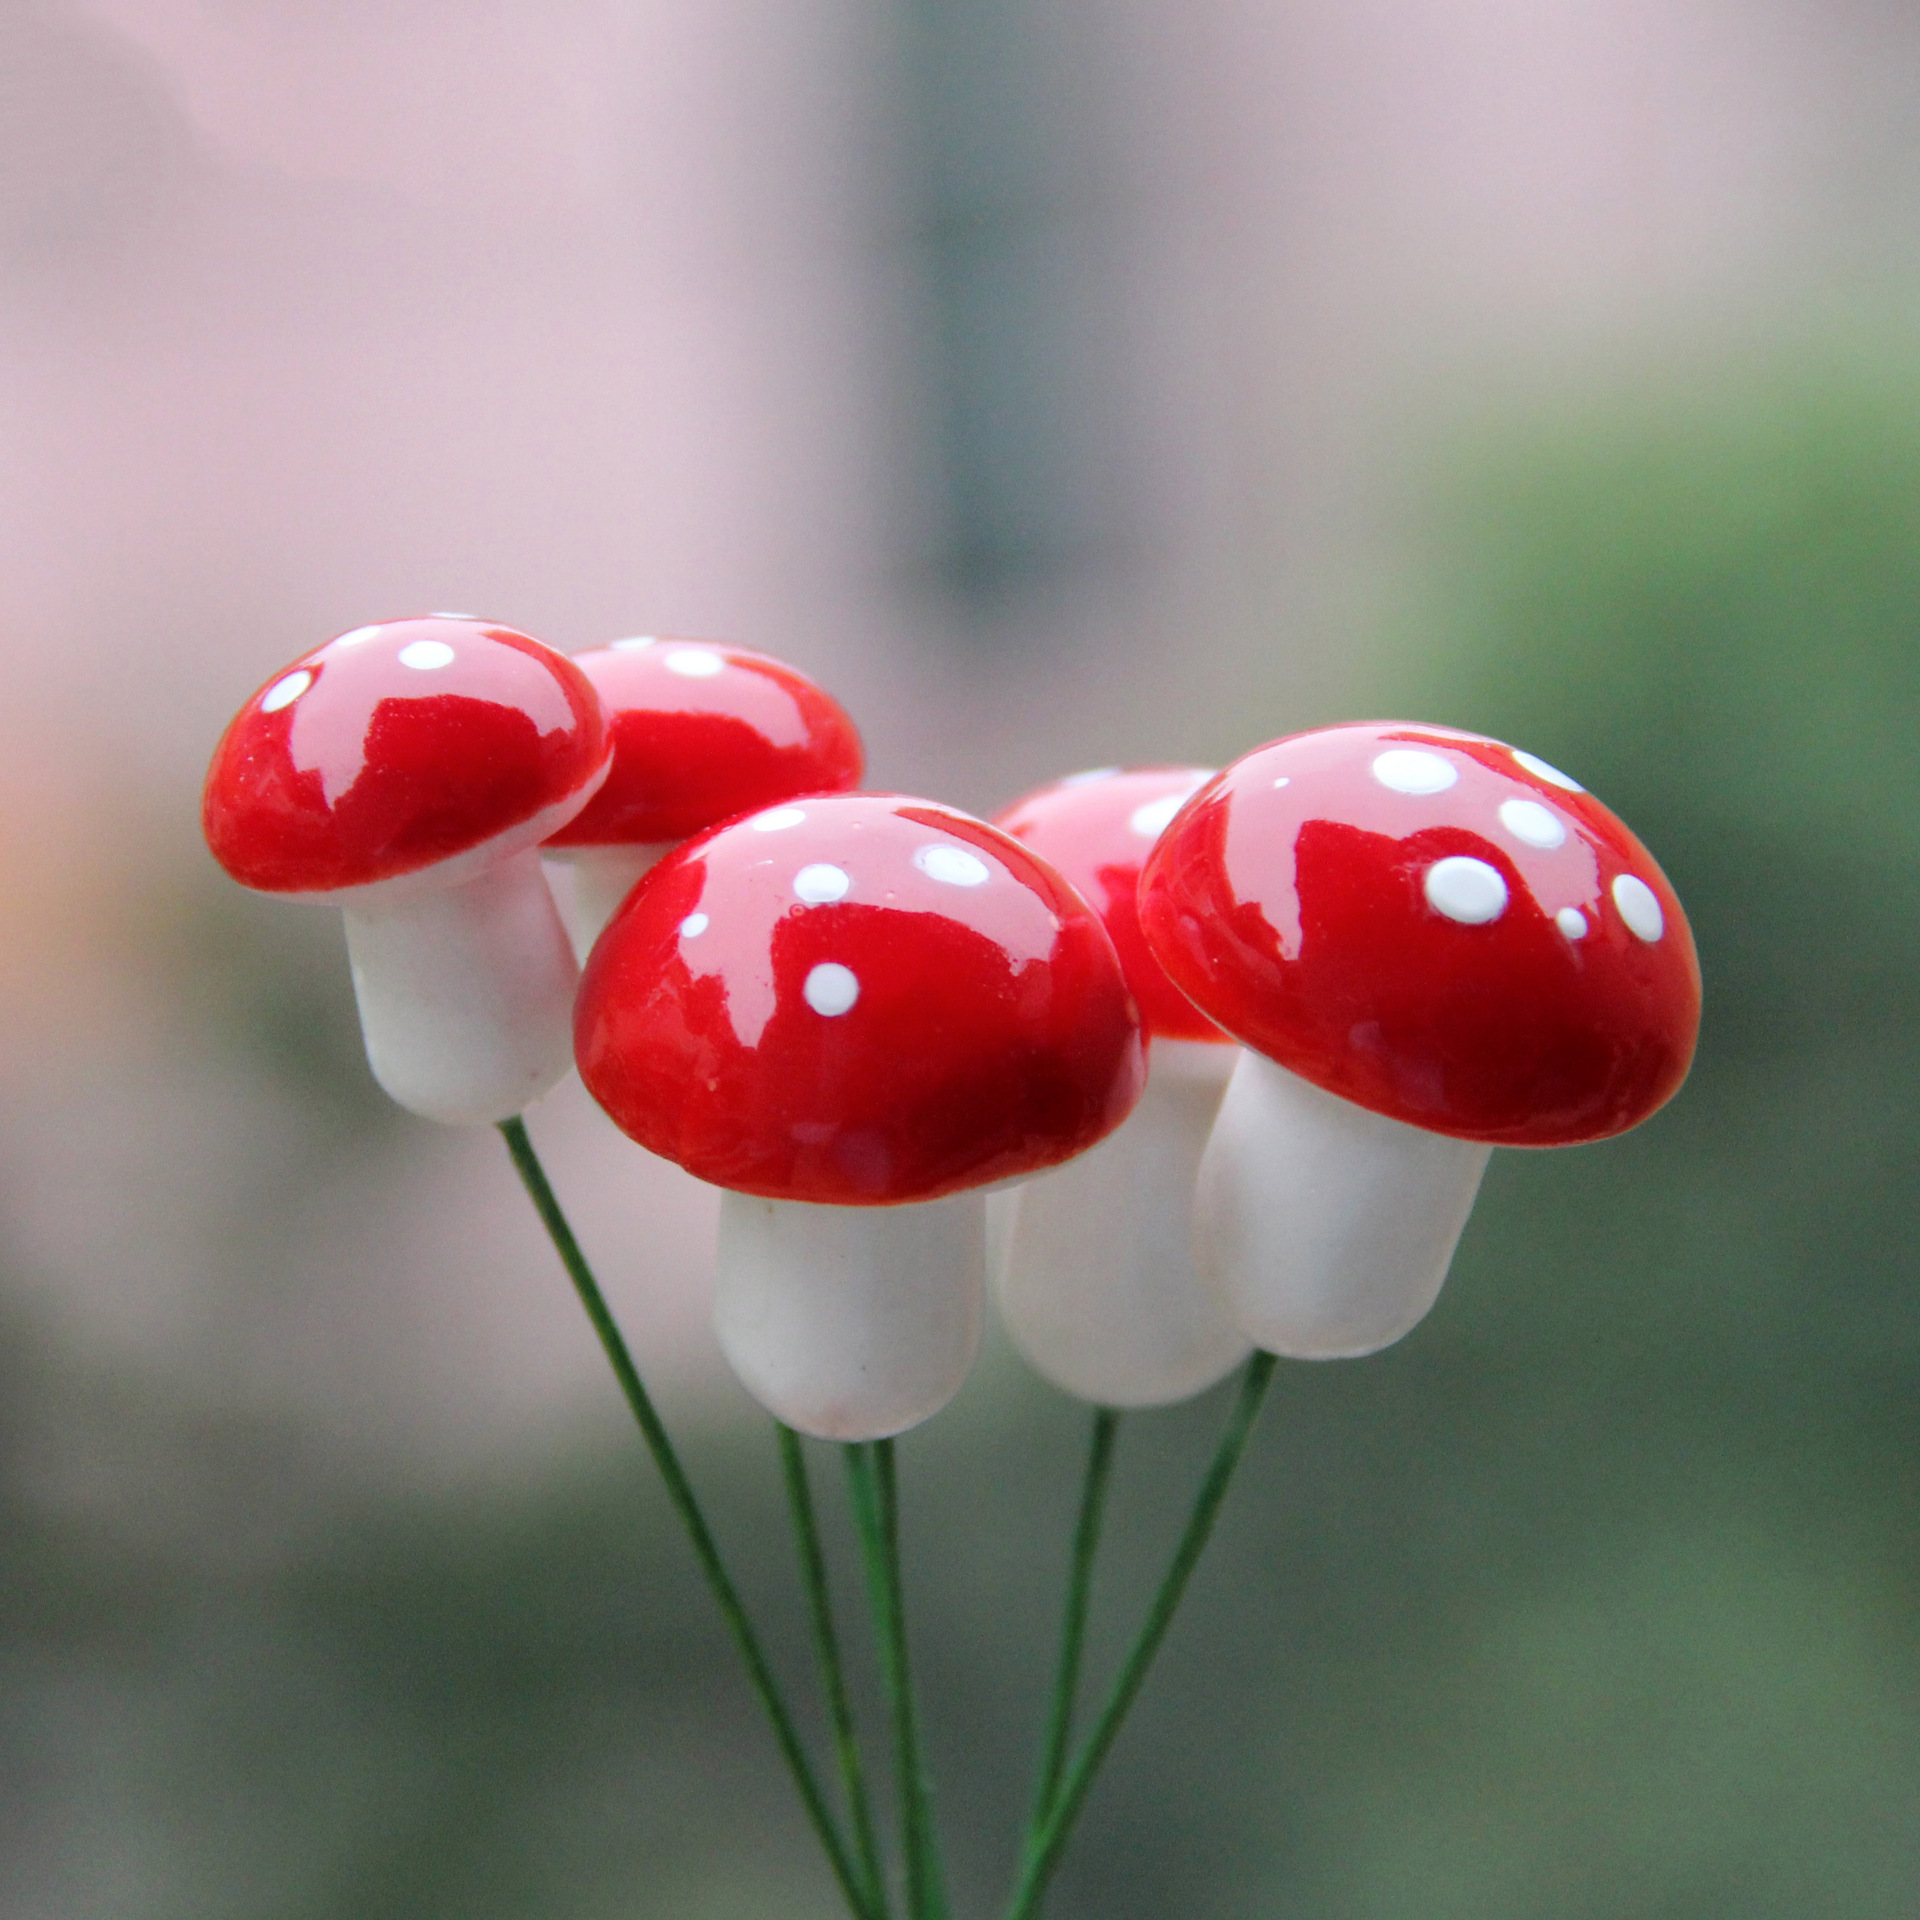 苔藓微景观摆件 红色泡沫 蘑菇配件 DIY组装小摆件玩具 蘑菇配件